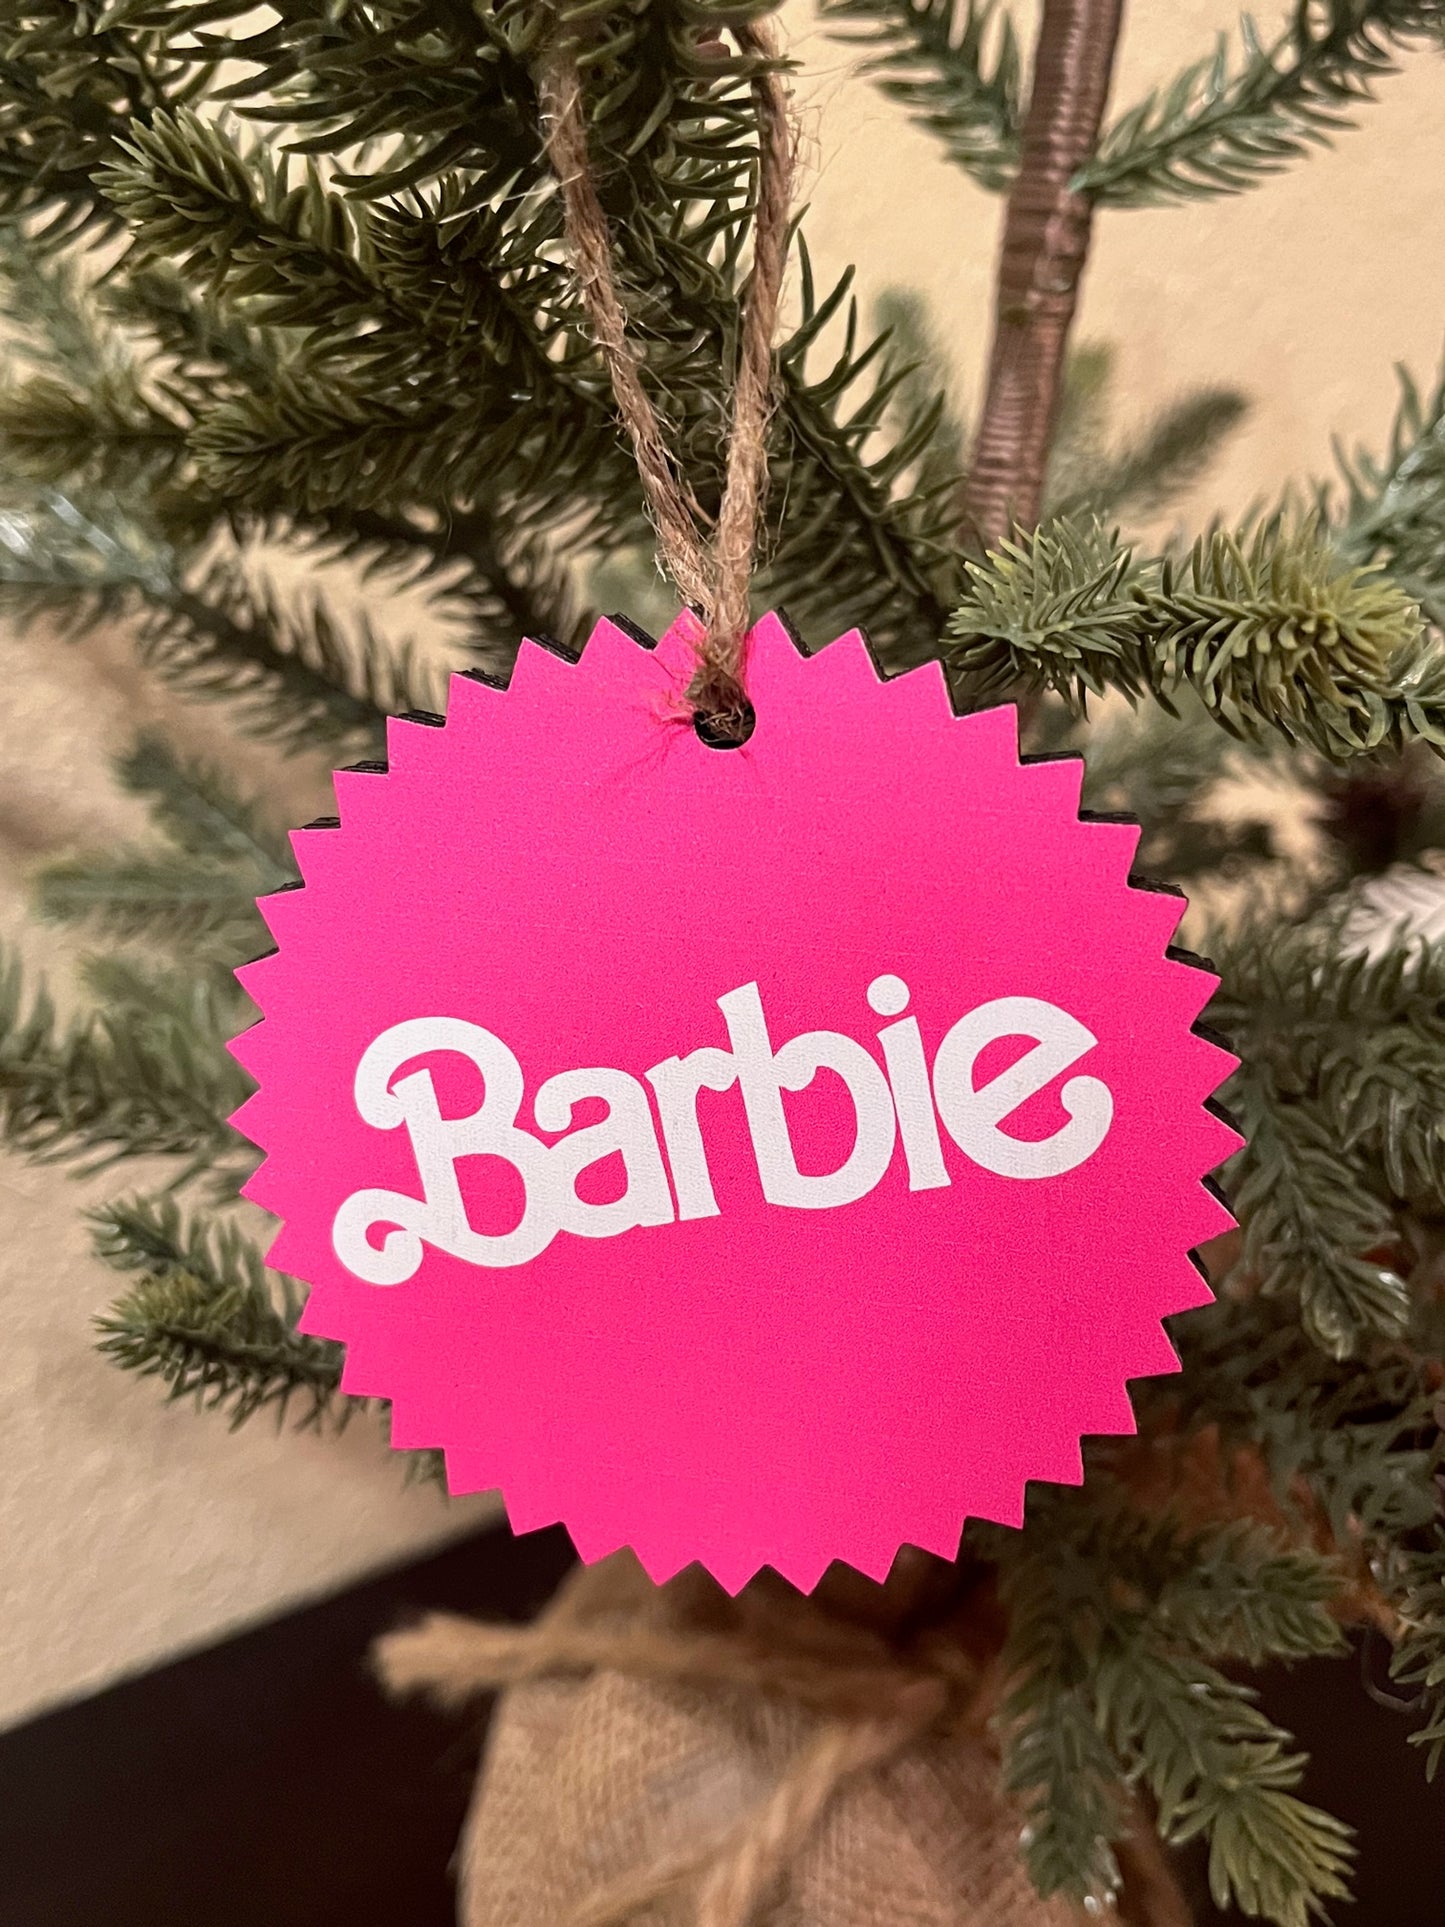 Barbie Christmas Ornament